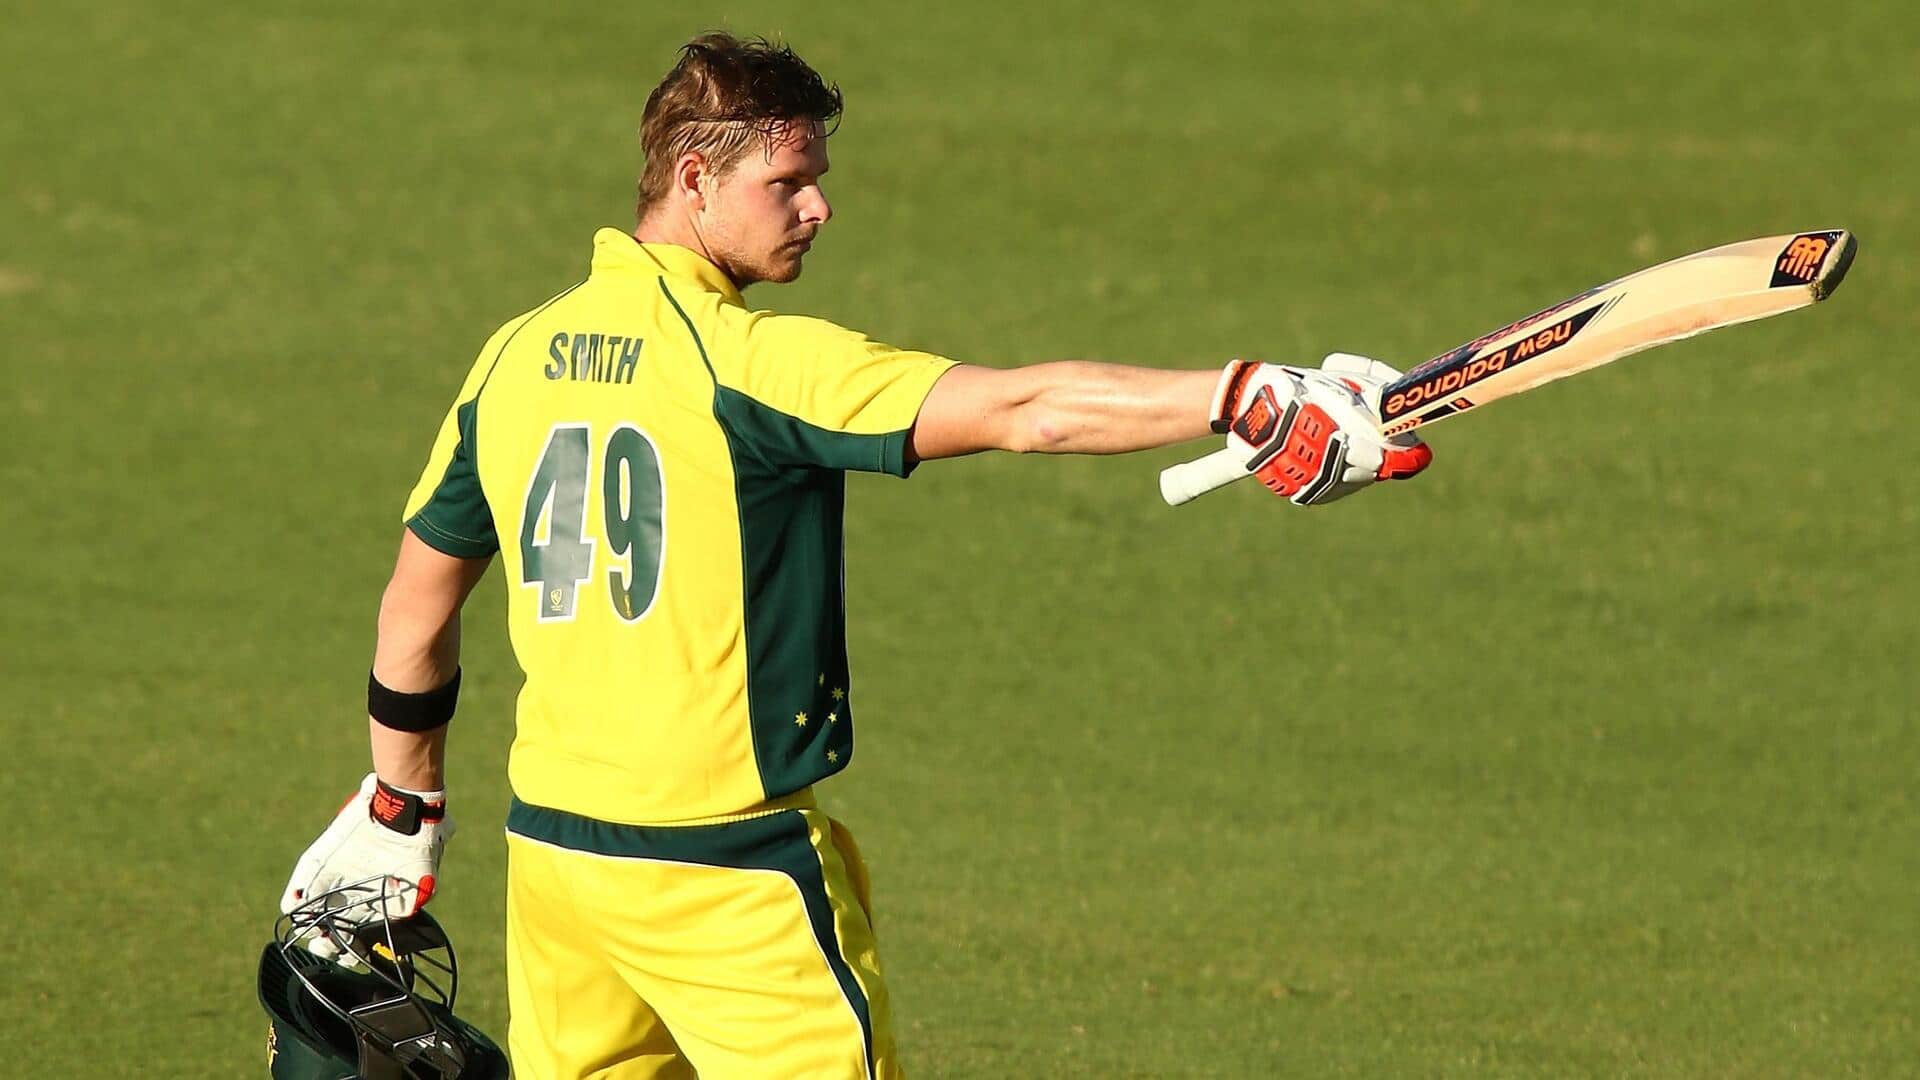 वेस्टइंडीज के खिलाफ वनडे सीरीज के लिए ऑस्ट्रेलिया की टीम घोषित, स्टीव स्मिथ करेंगे कप्तानी